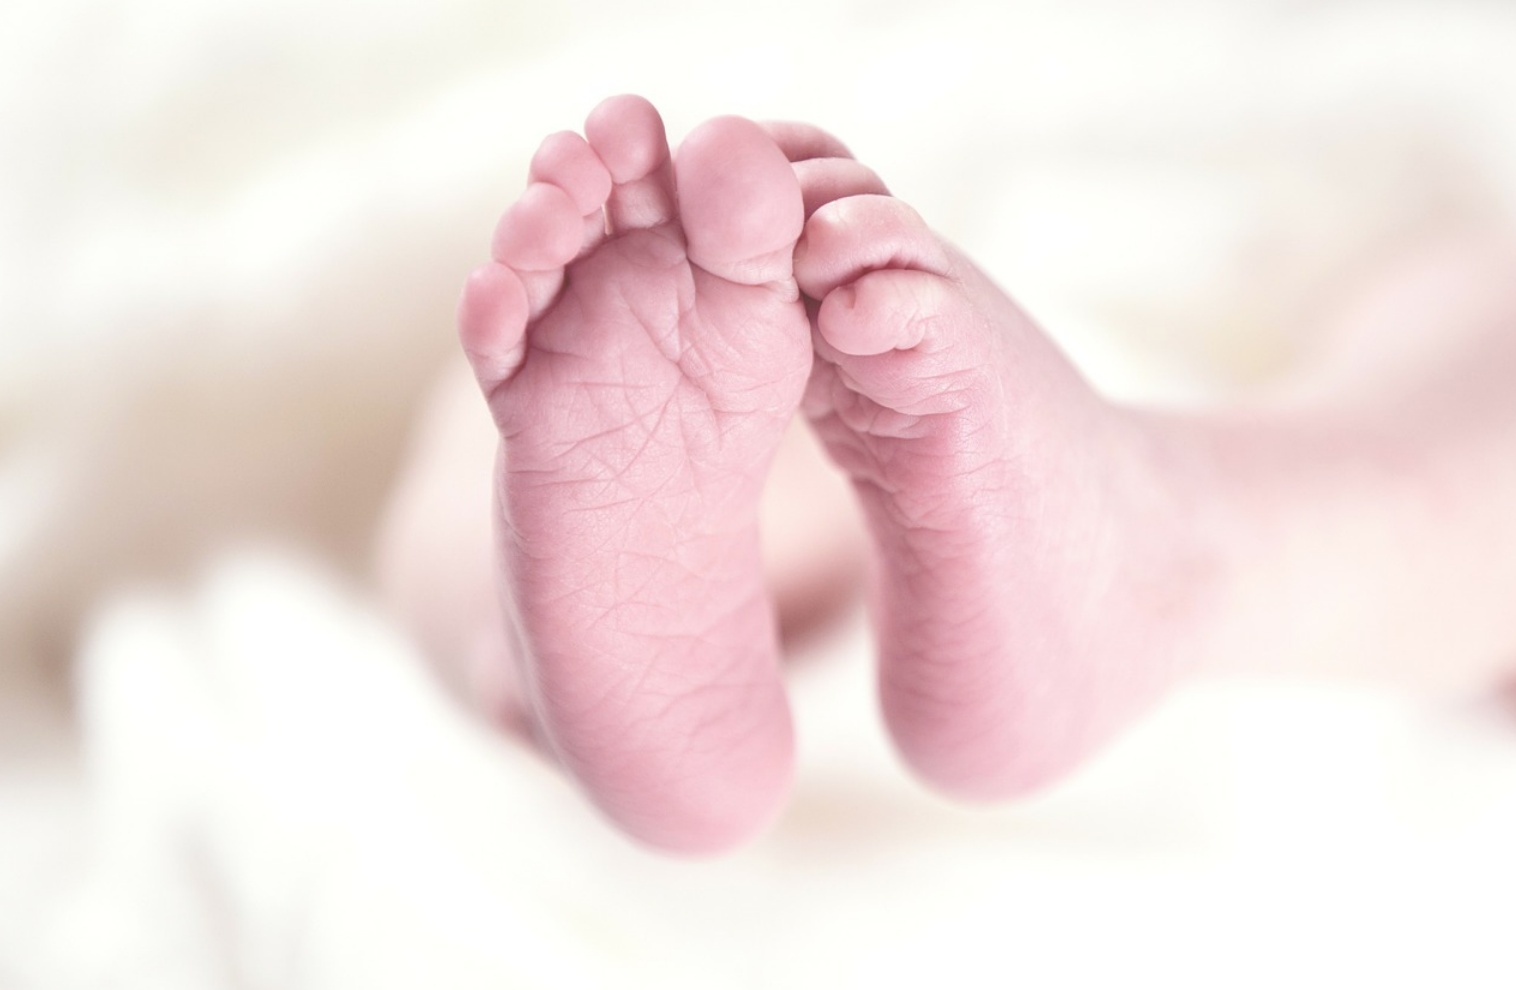 FLASH – Mamma surrogata muore nel partorire per un’altra coppia 1